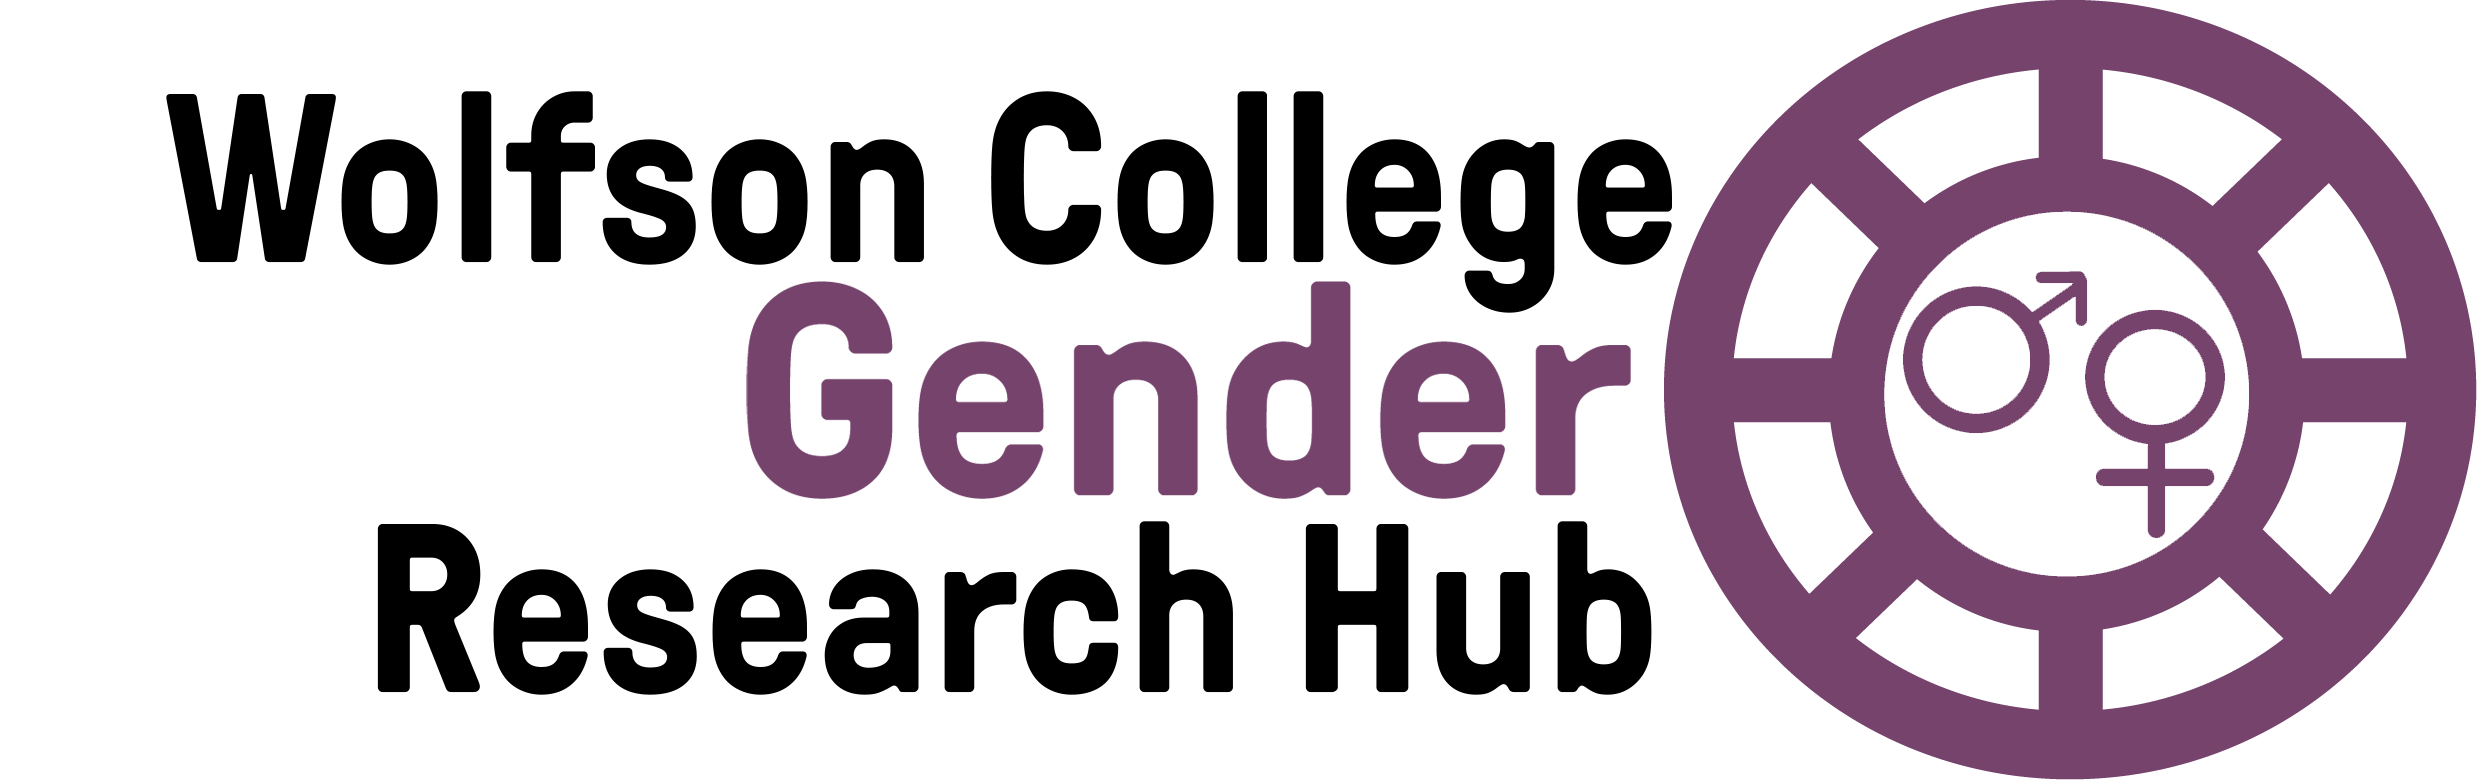 Gender Hub